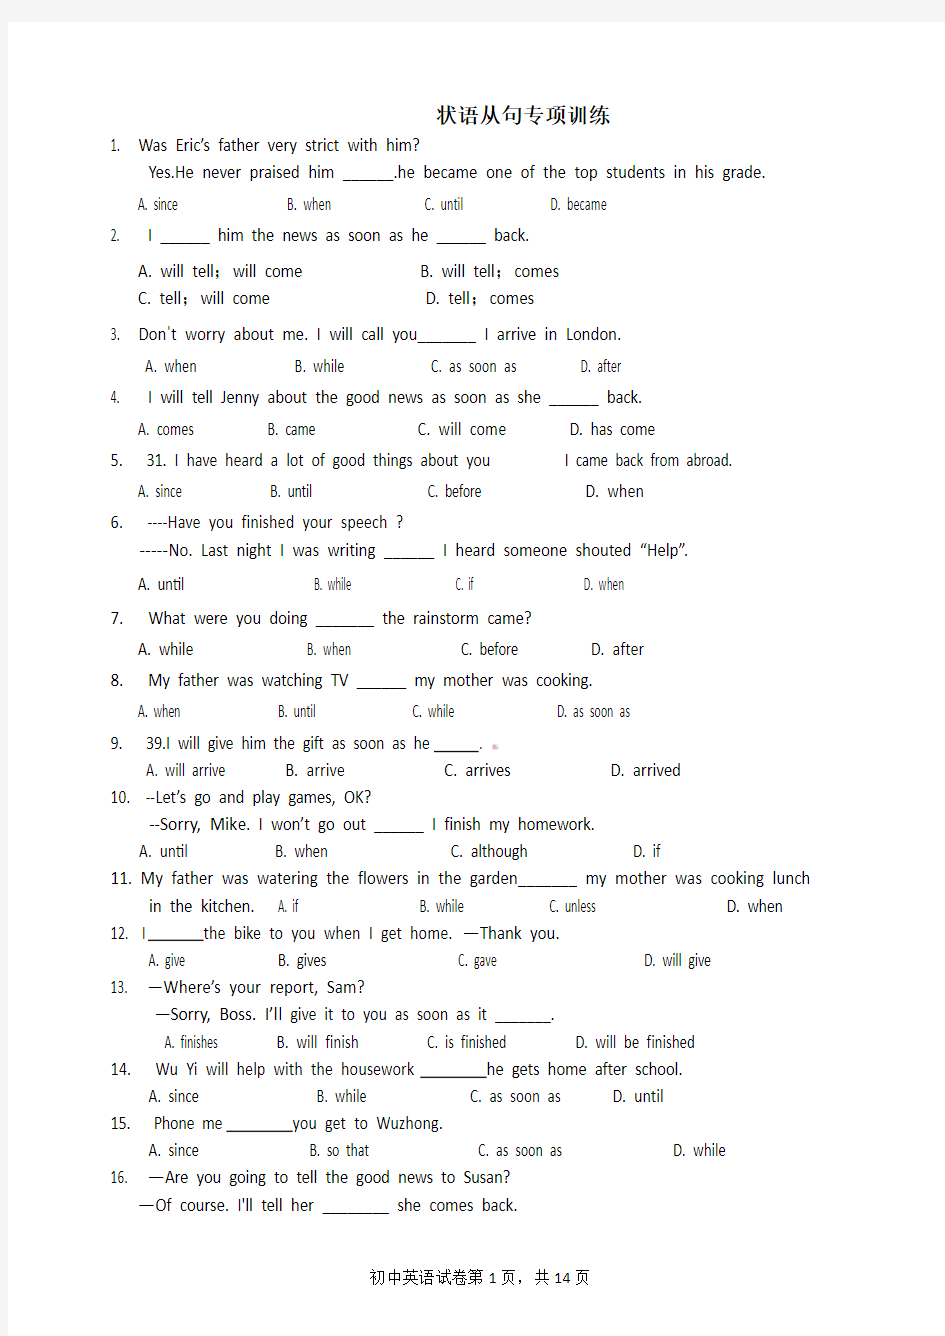 状语从句专项练习题单项选择70道